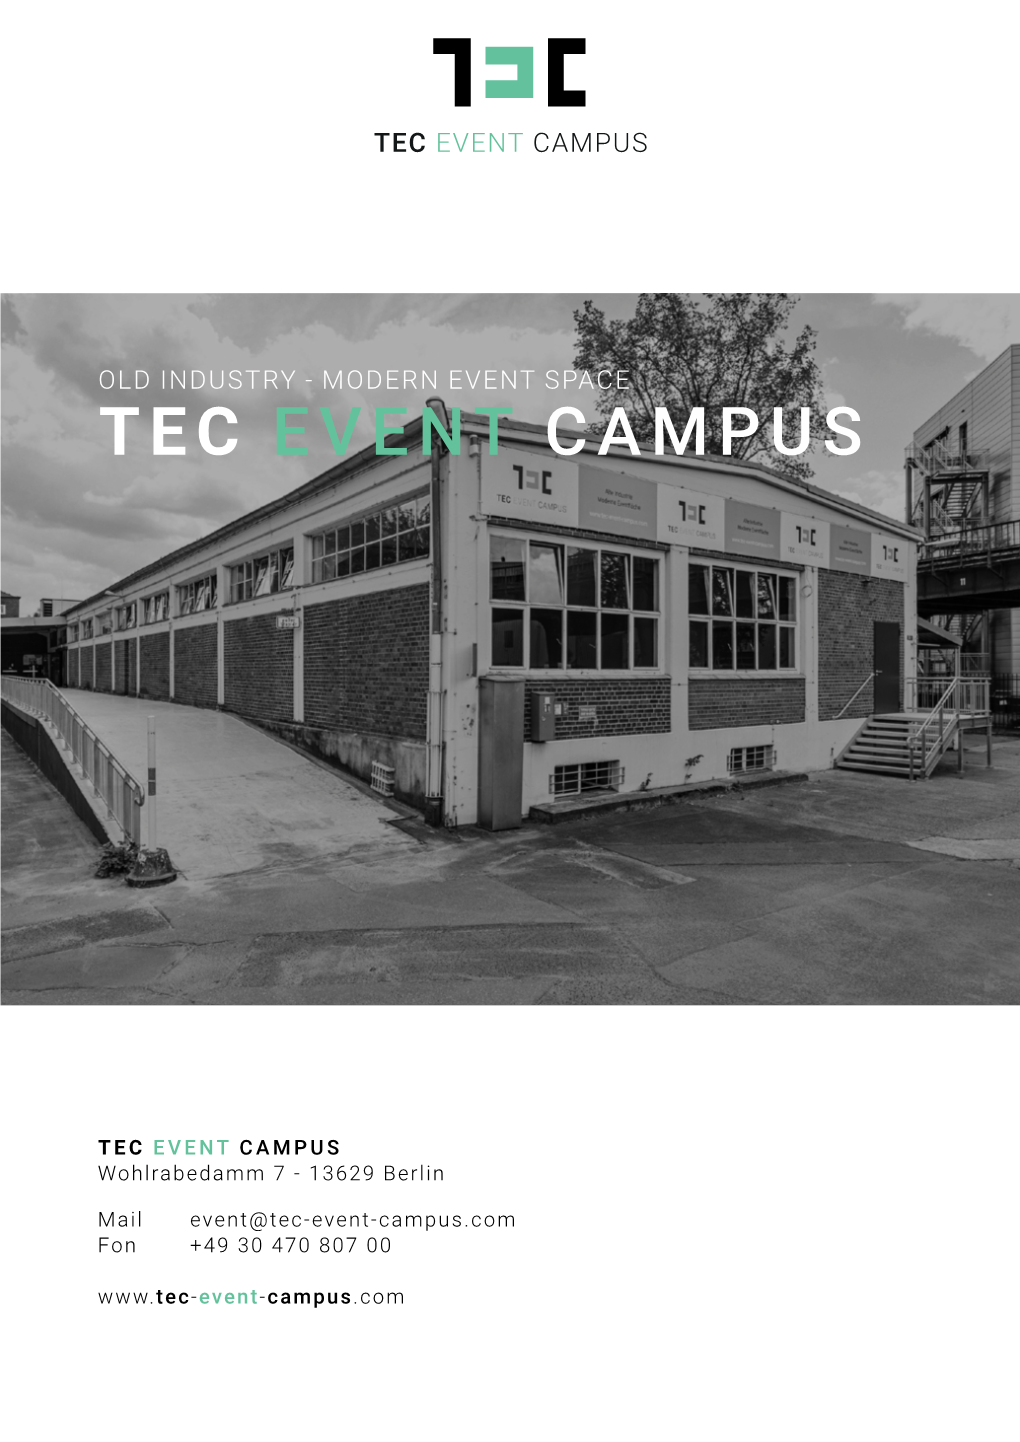 Tec Event Campus